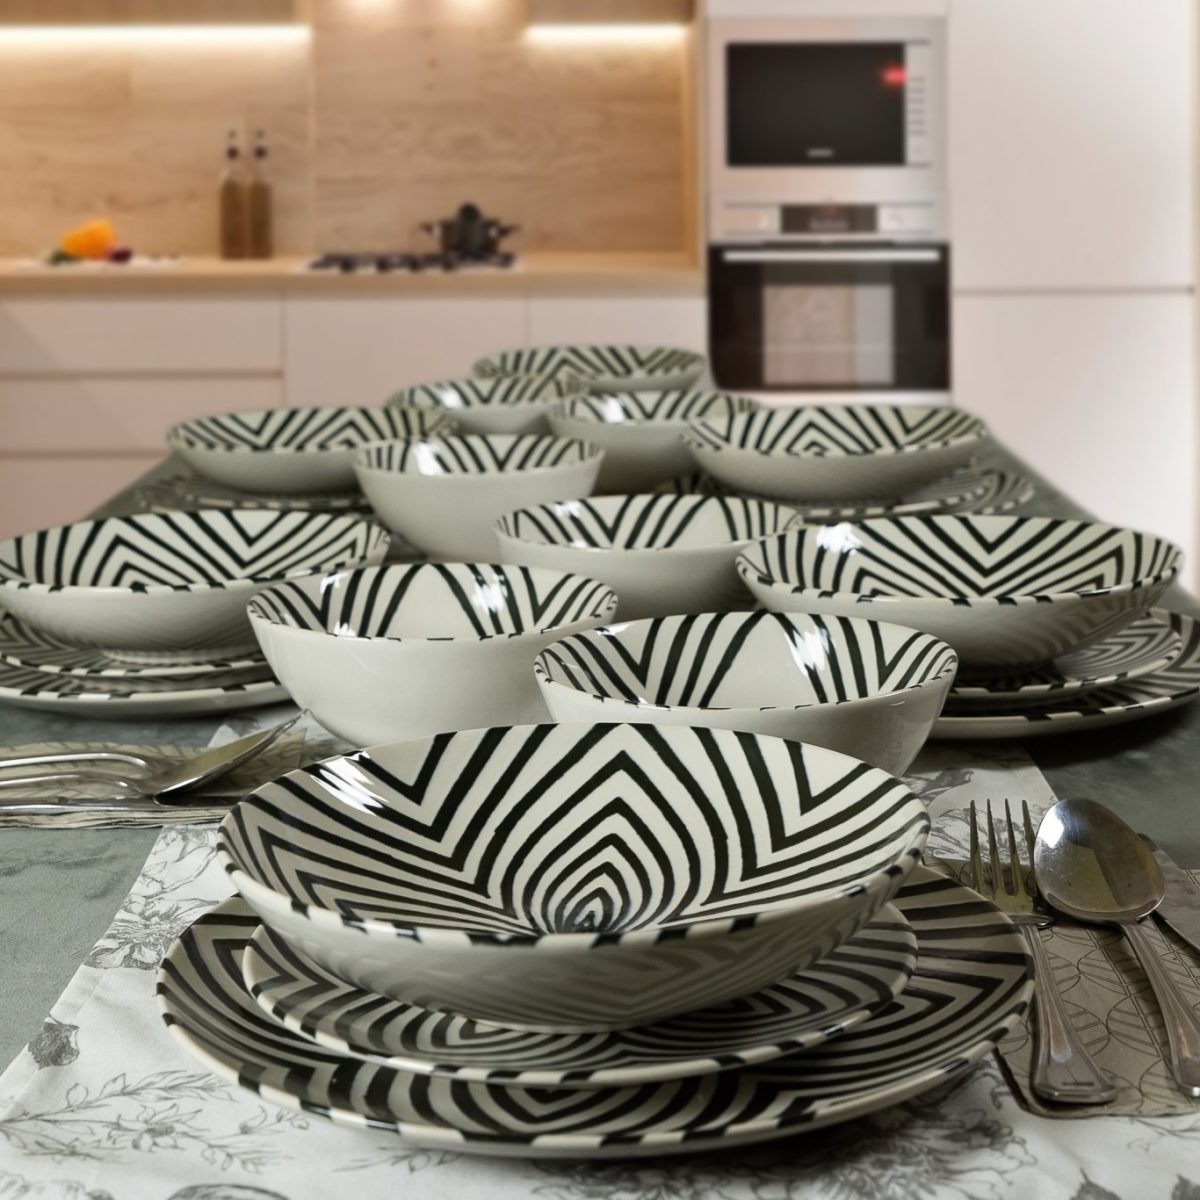 Küchenset, Cesiro, für 6 Personen, 73-teilig, Elfenbeinweiß mit schwarzen Linien